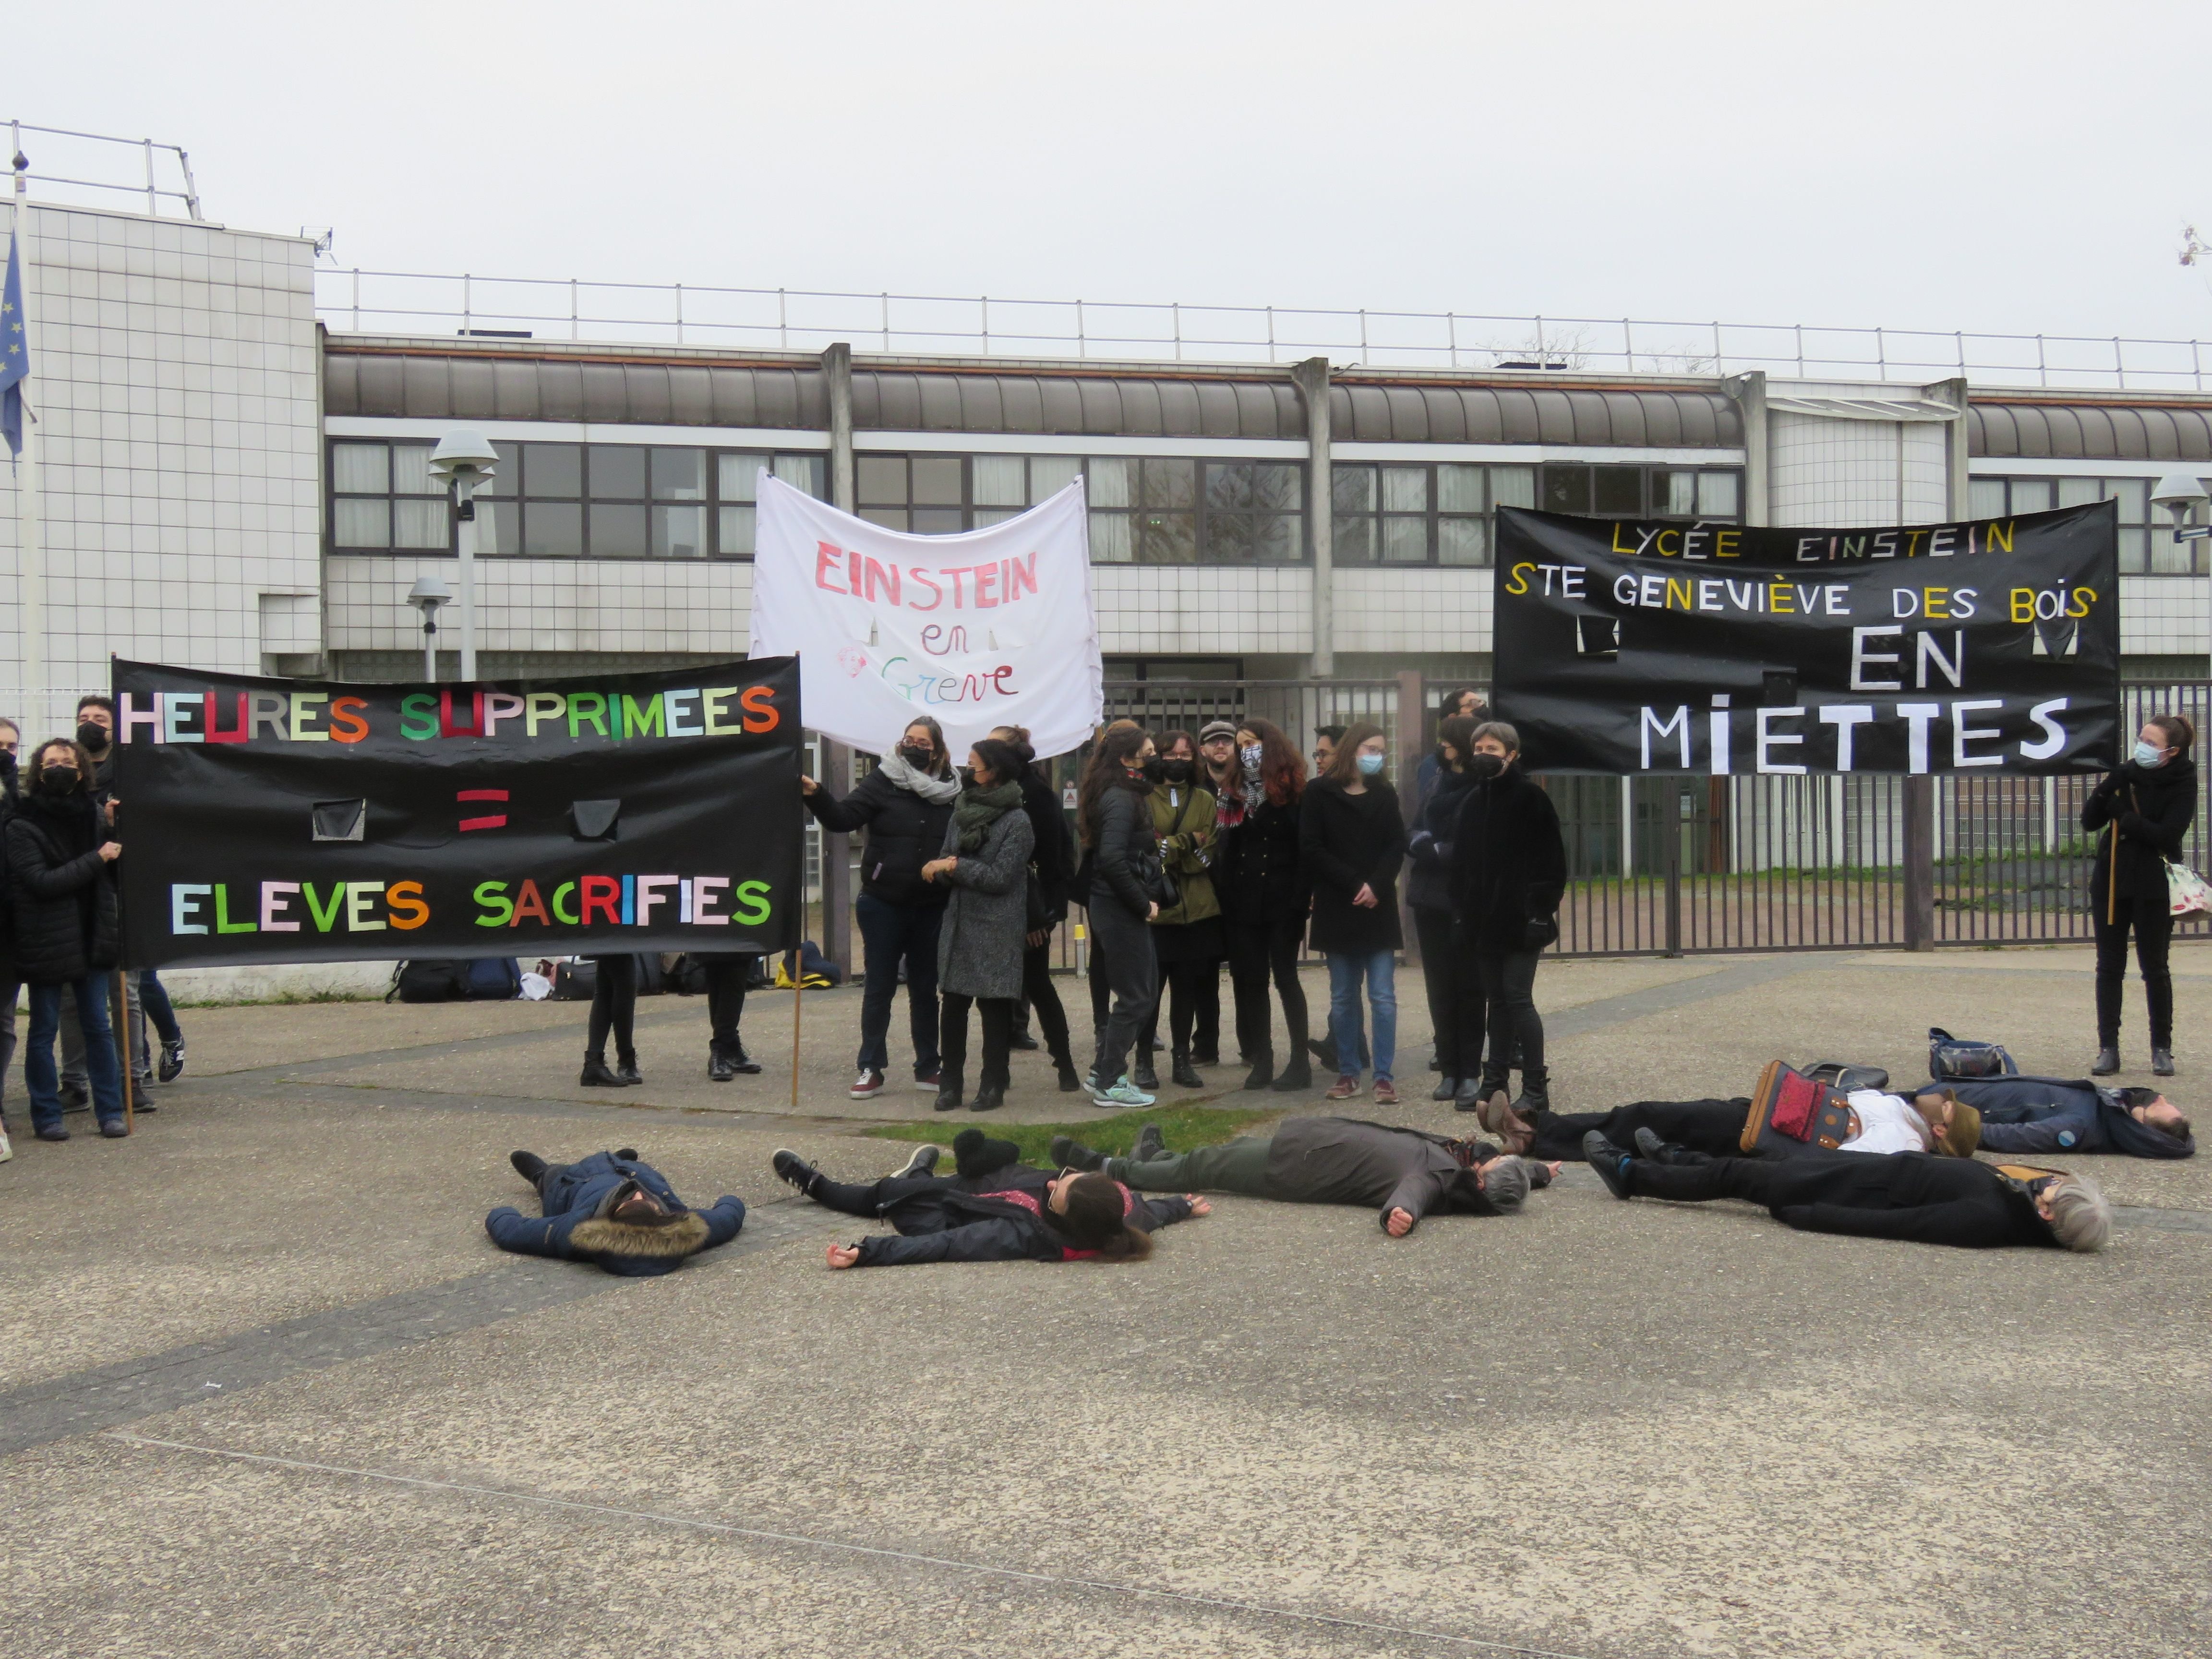 Ce mardi 8 février, 82% des professeurs du lycée Einstein de Saint-Geneviève-des-Bois étaient en grève. LP/Nolwenn Cosson